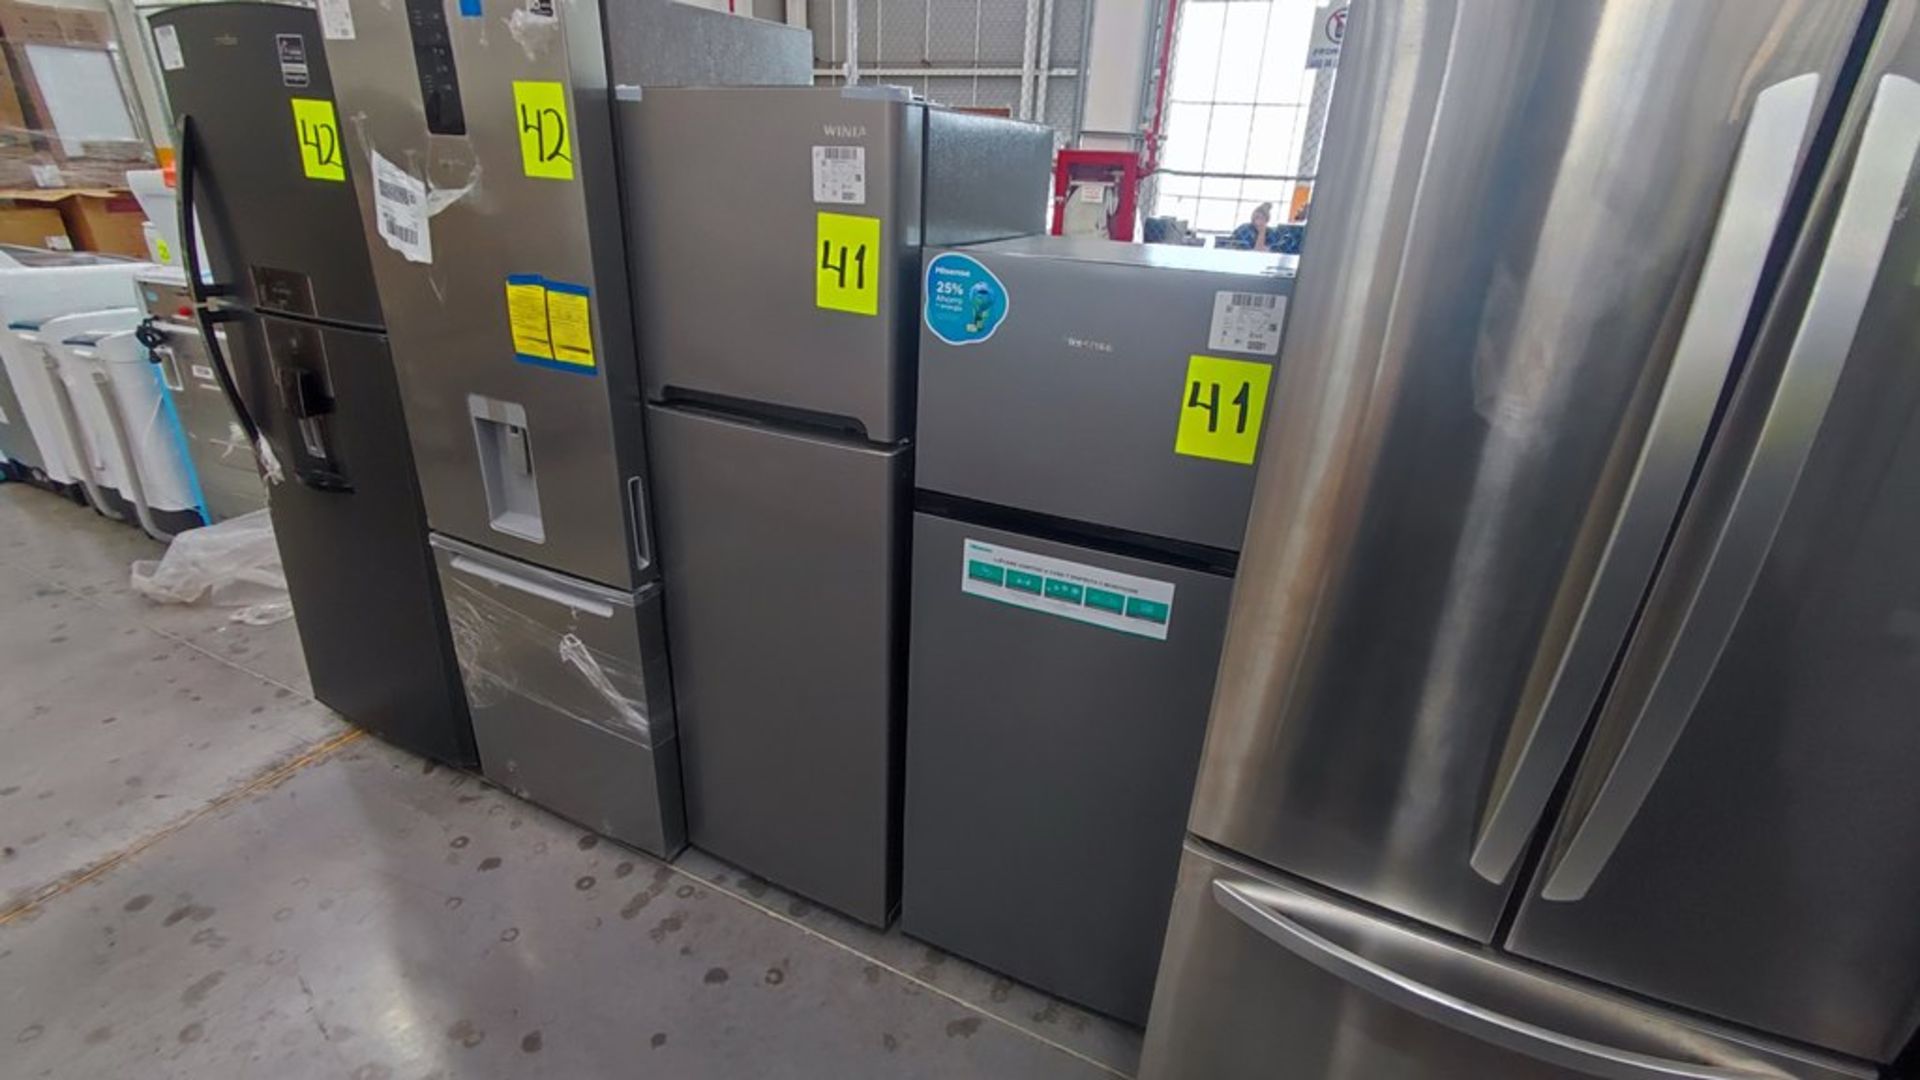 Lote de 2 Refrigeradores contiene: 1 Refrigerador Marca Hisense Modelo BCYNY, No de serie 1B0205Z00 - Image 2 of 11